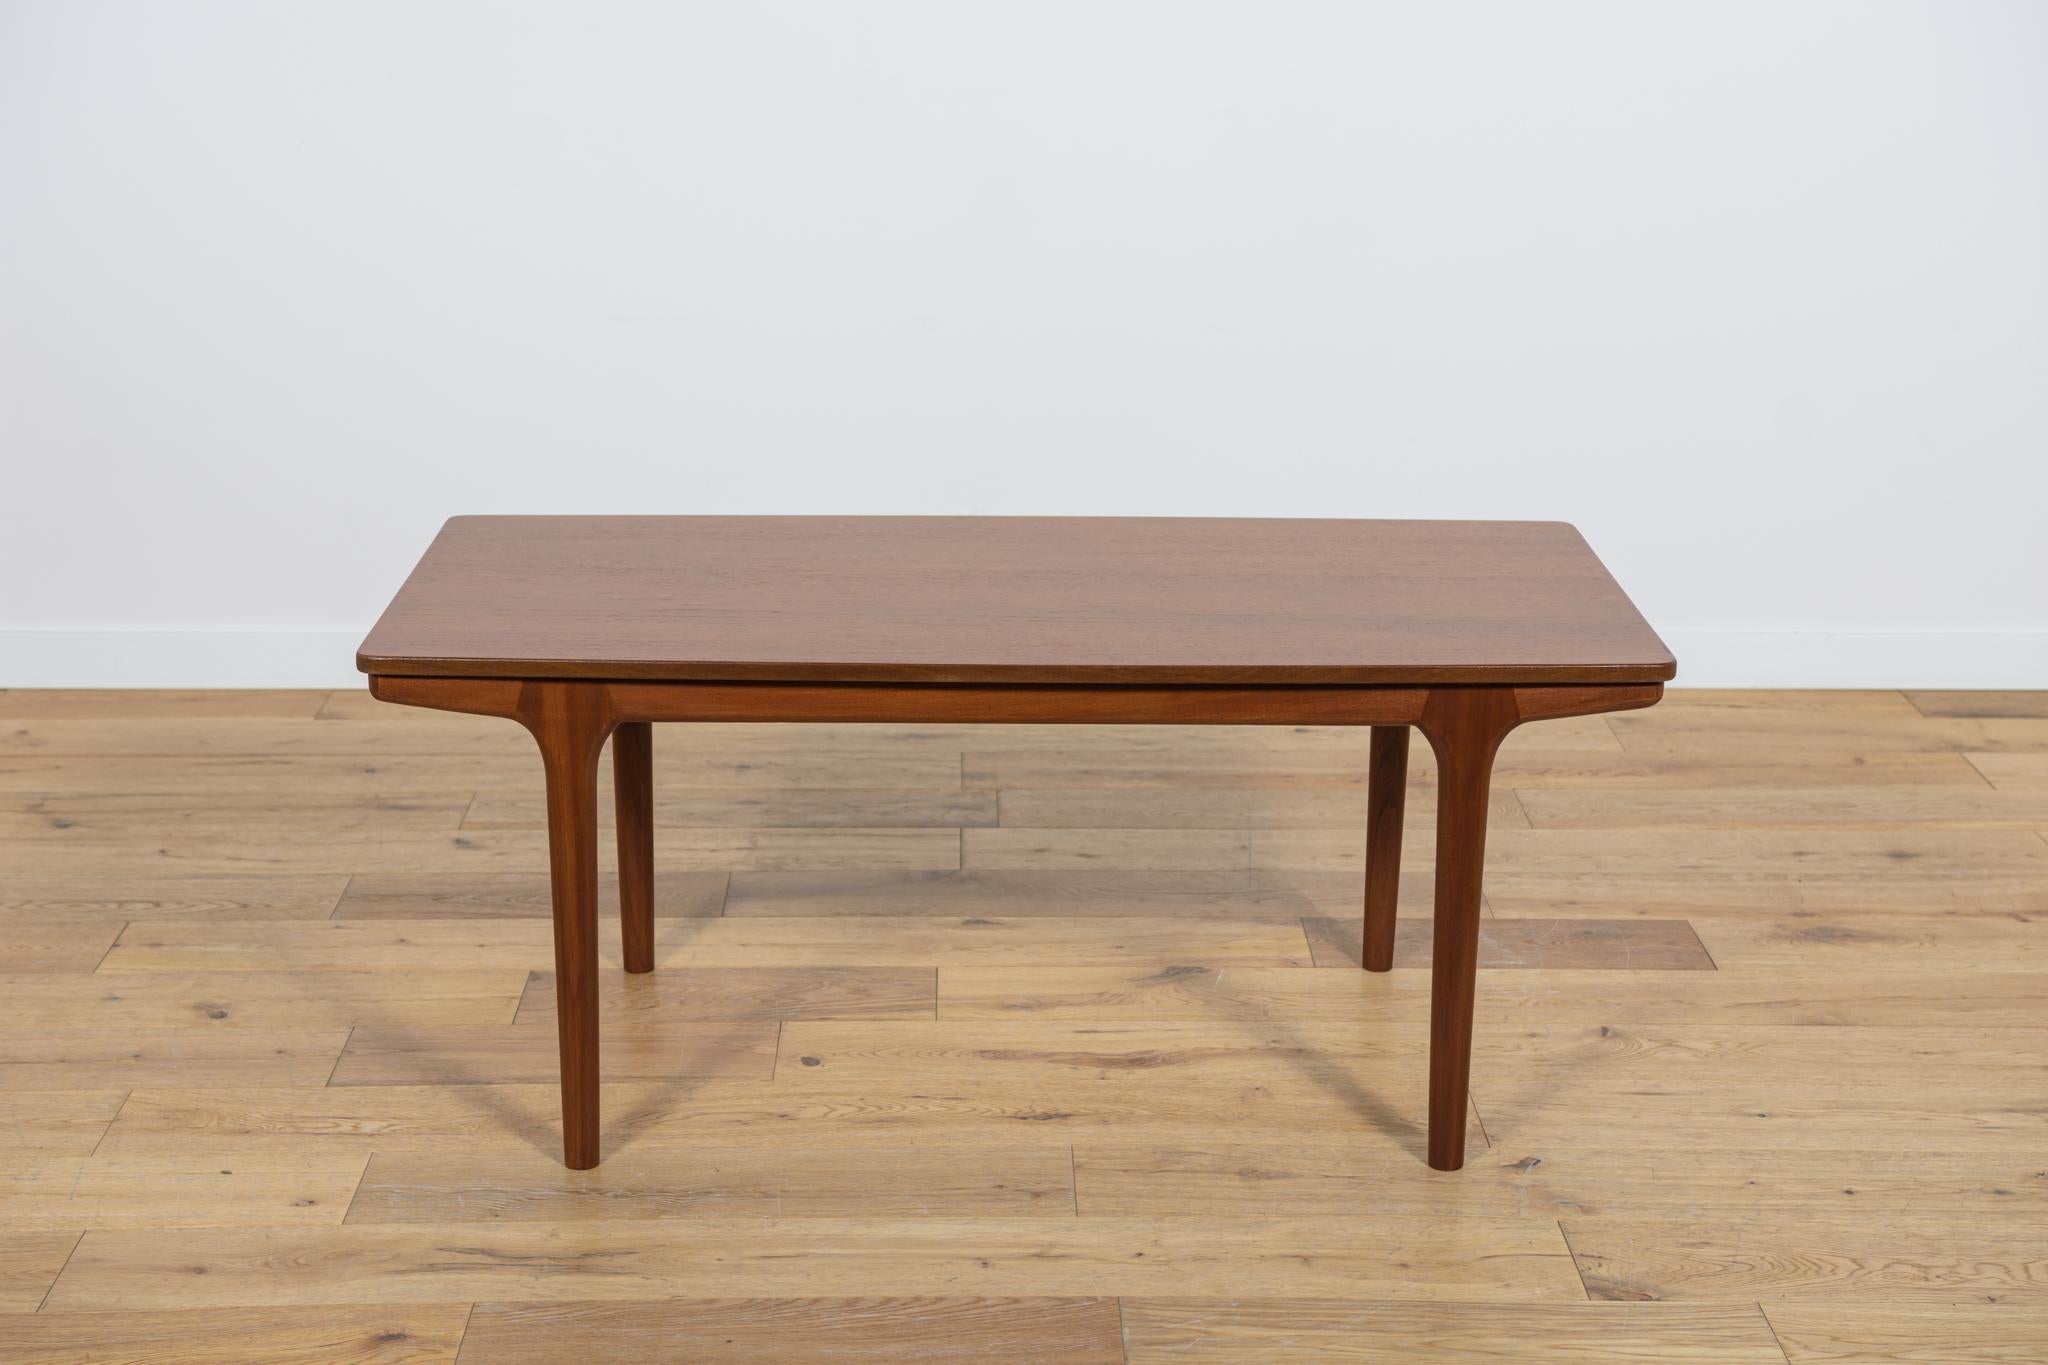 Table basse fabriquée dans les années 1960 dans la manufacture britannique McIntosh. Une table en teck à la forme légère et sublime. La table basse possède deux plateaux latéraux rétractables d'une longueur de 20 cm. Meubles après une rénovation